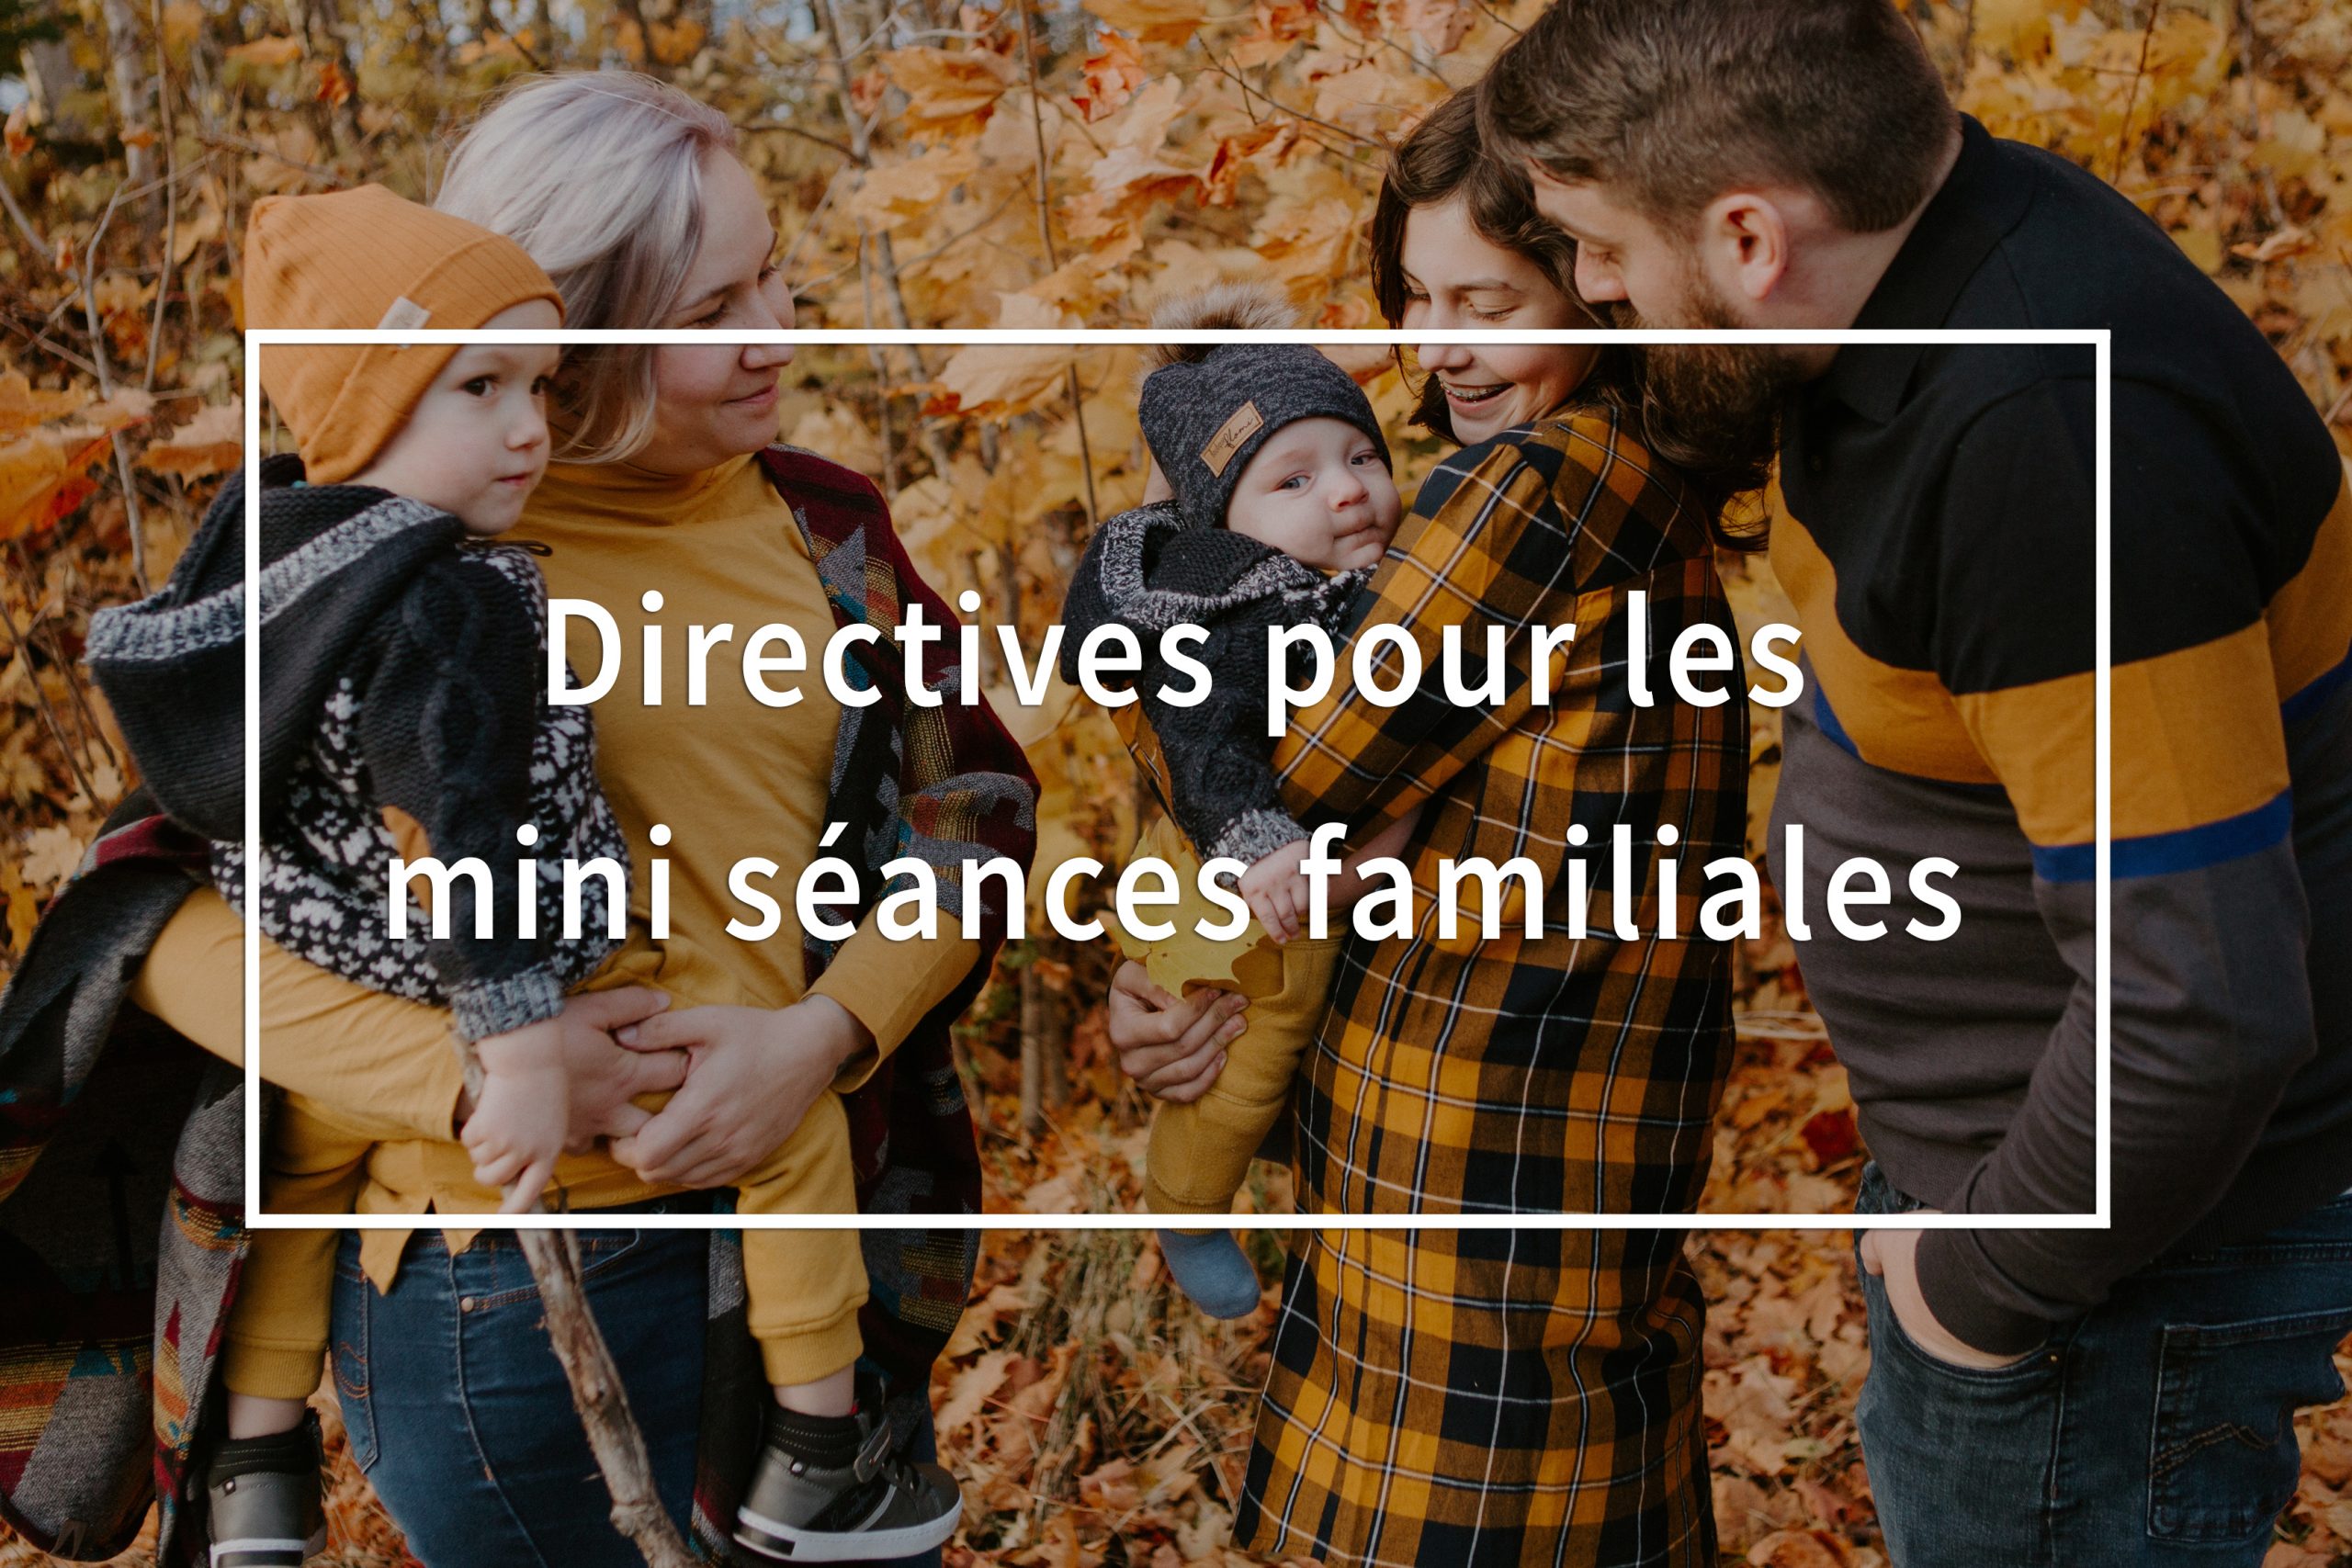 Directives pour les mini séances familiales. Family mini sessions directives. Lisa-Marie Savard Photographie